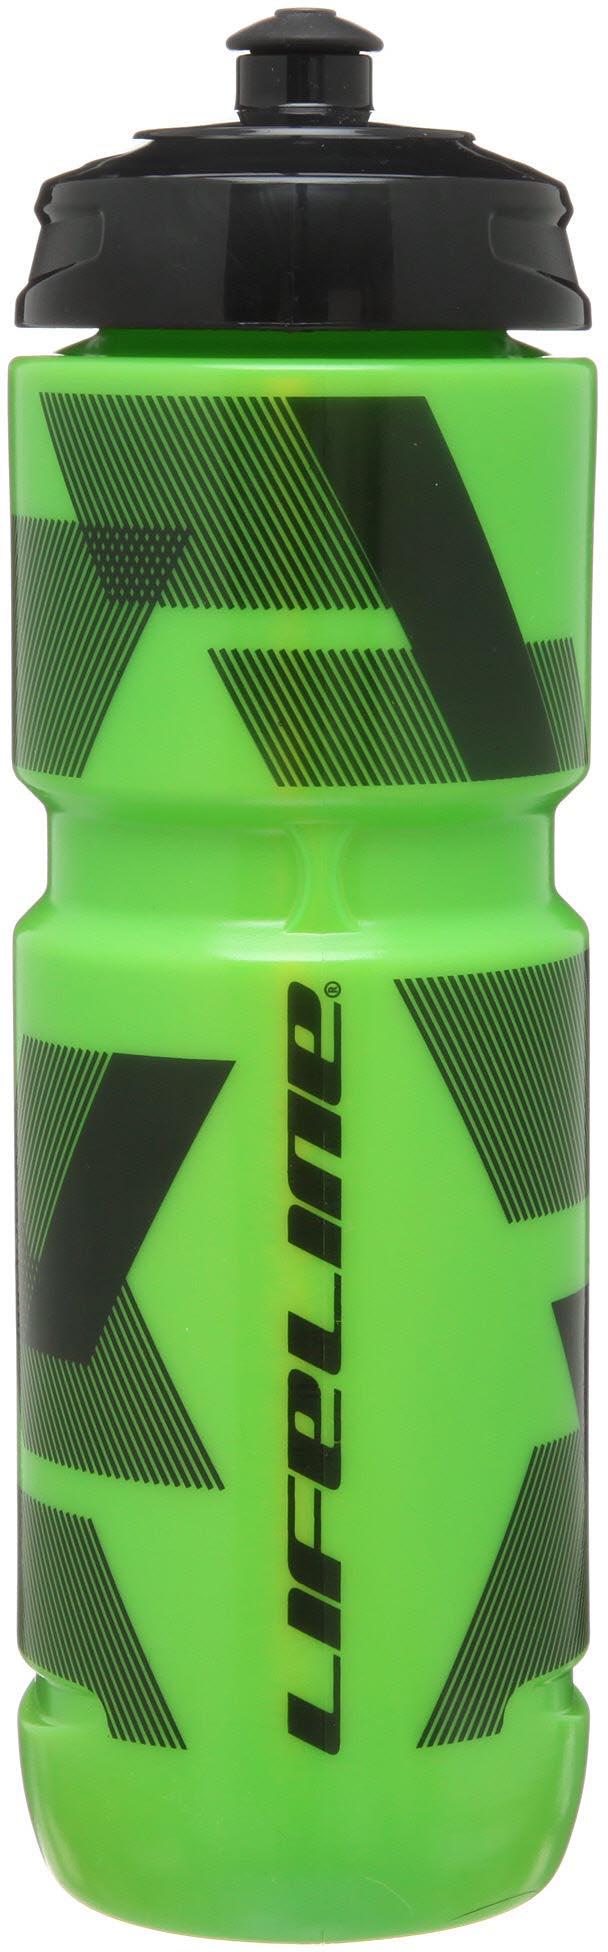 Lifeline Water Bottle 800ml - Green/black